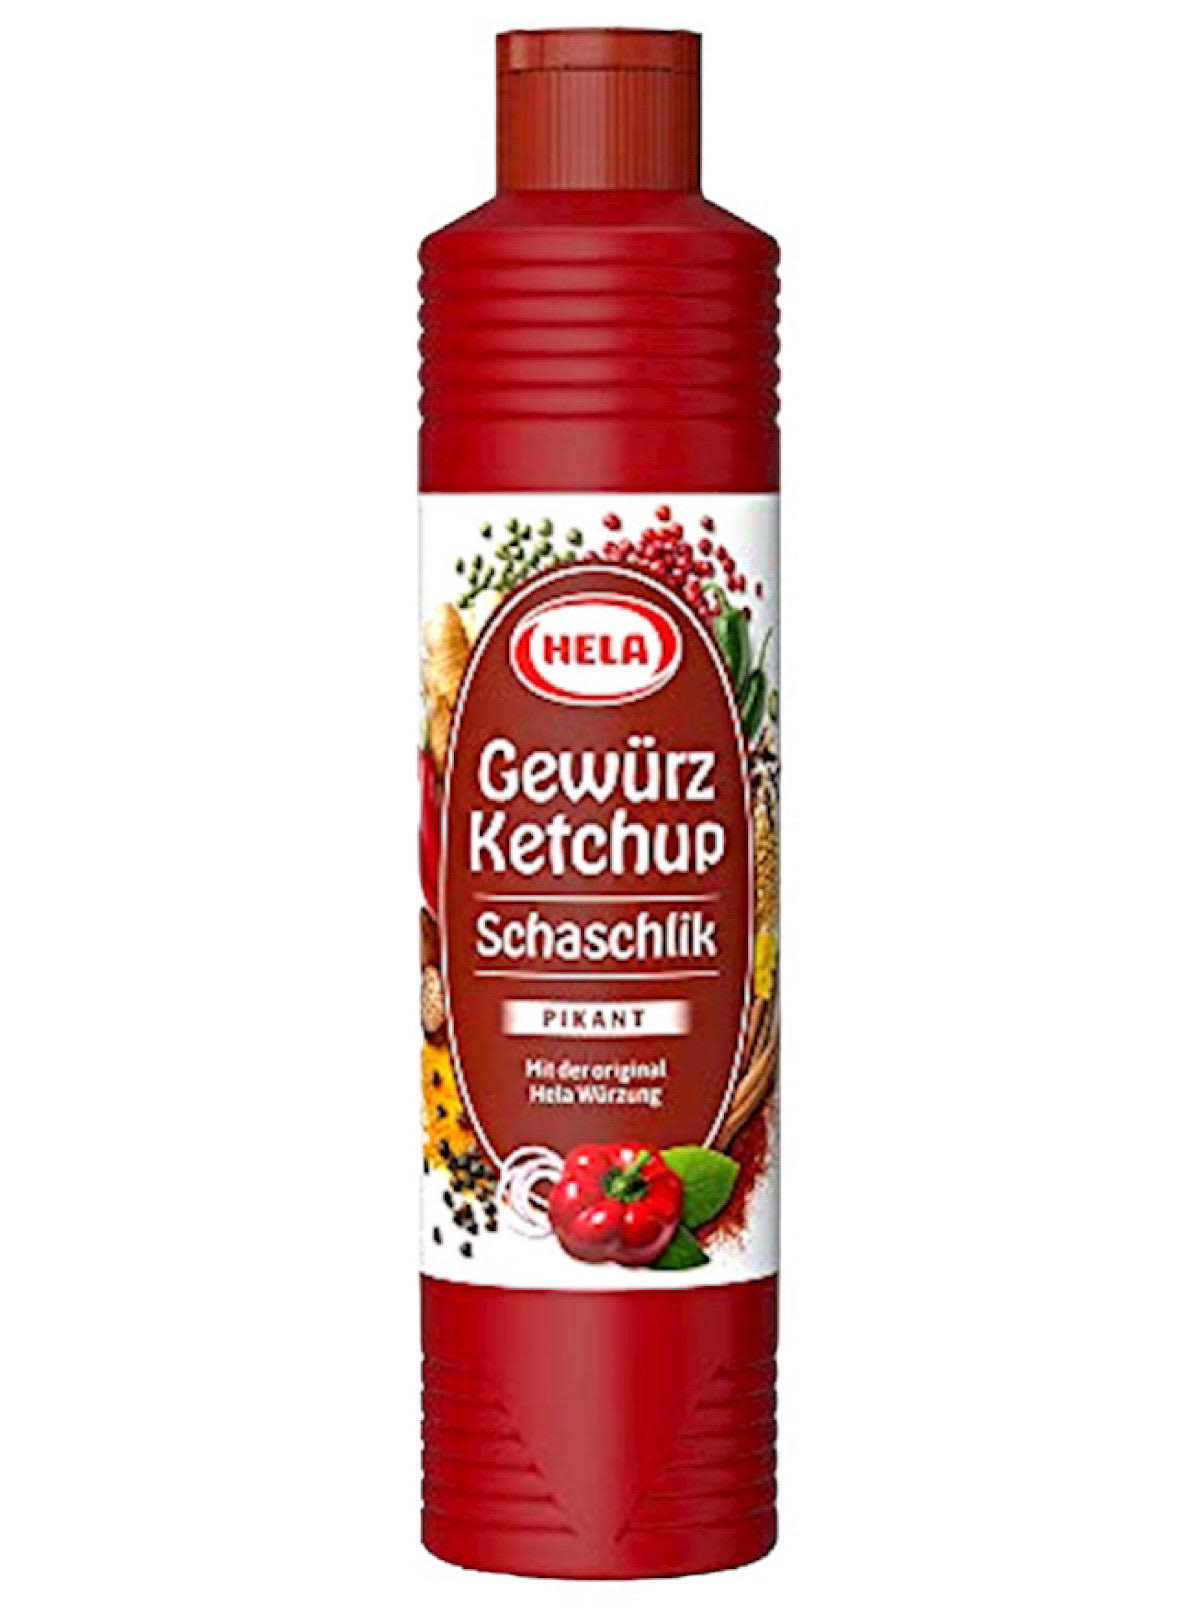 Hela Schaschlik Gewürz Ketchup 300ml